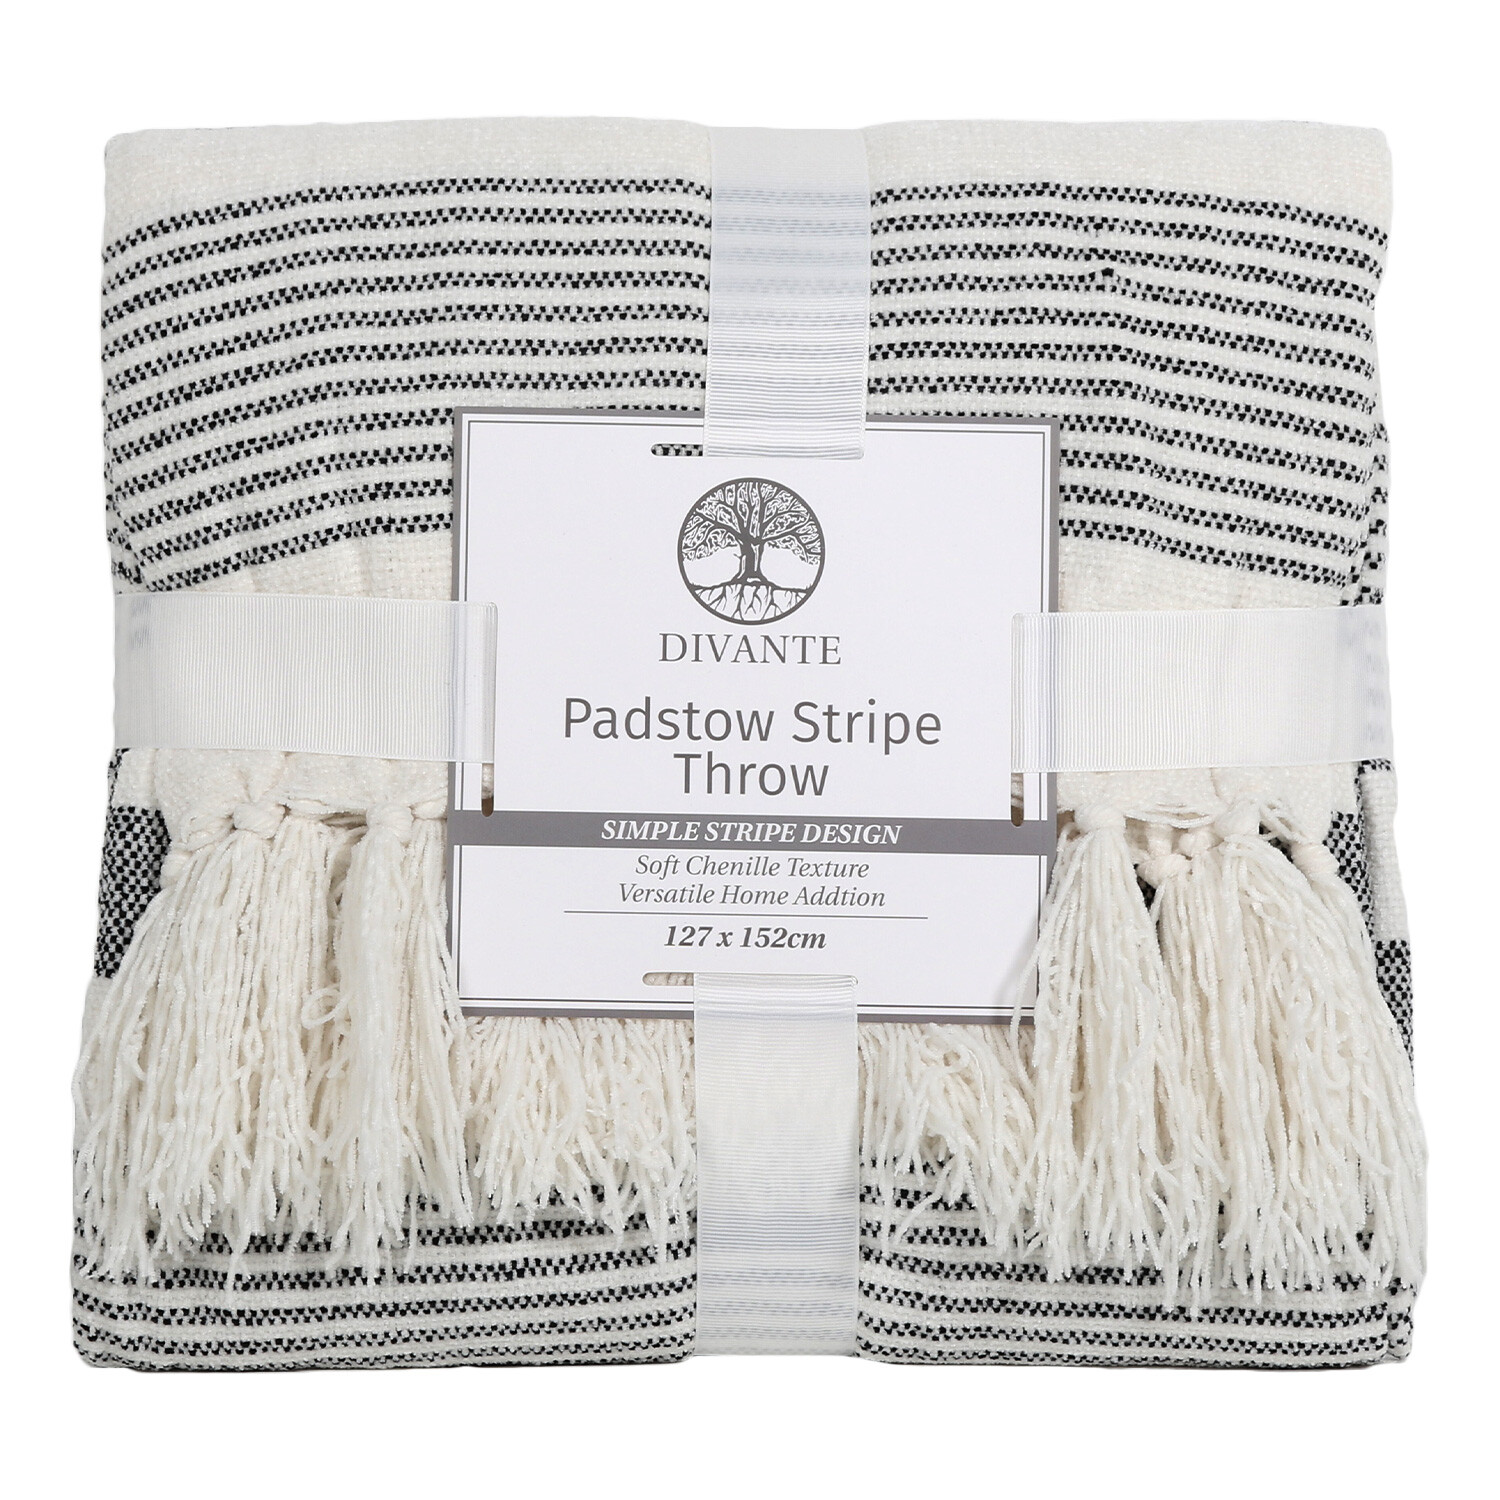 Padstow Stripe Throw - White Image 1